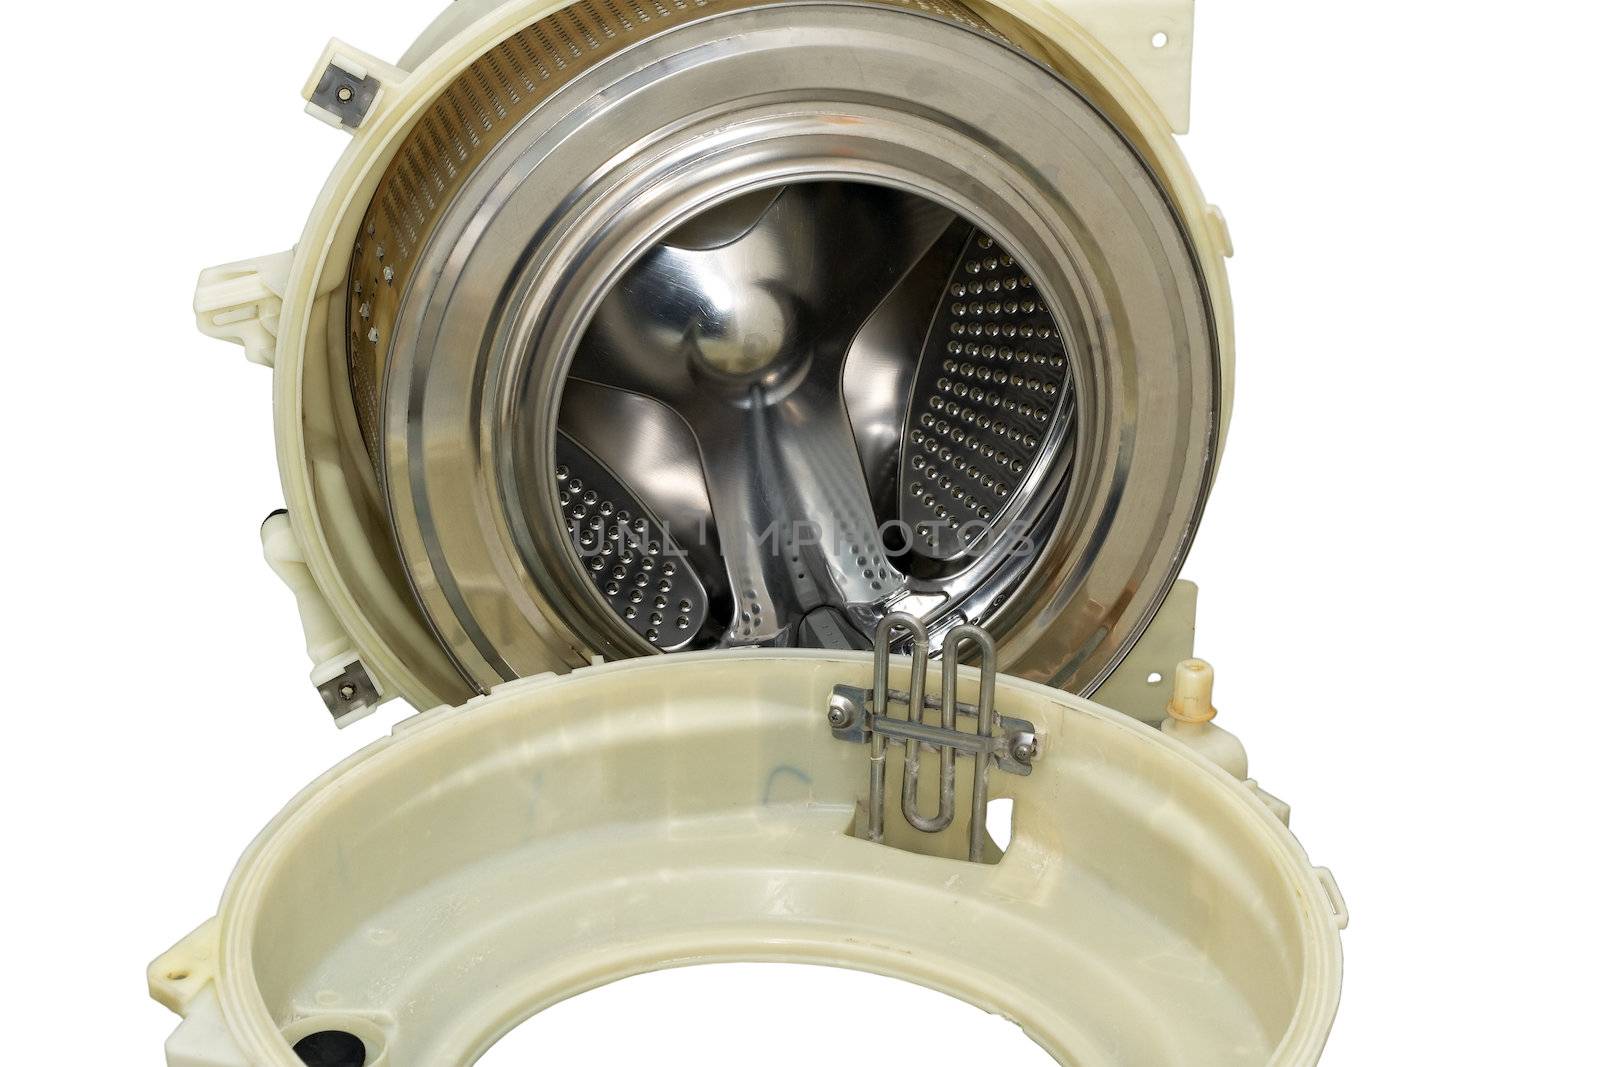 Steel drum of a washing machine. by ekipaj